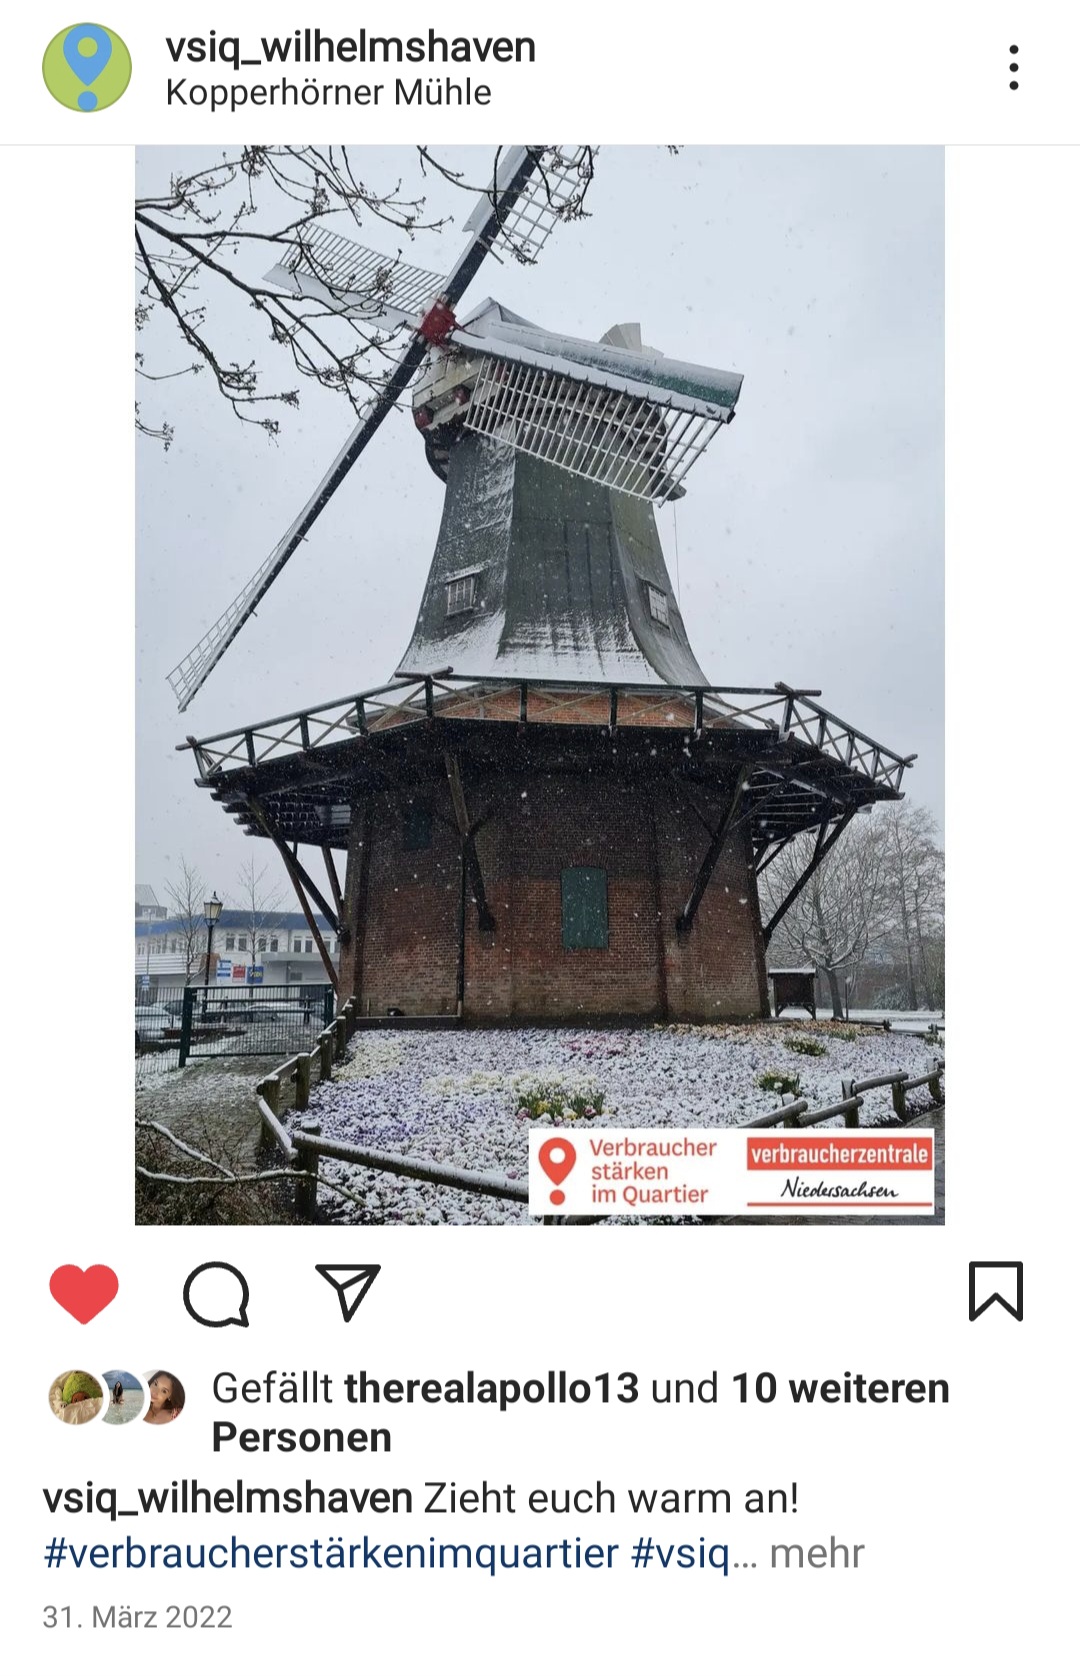 Ein Instagram Post der Seite "vsip_wilhelmshaven" zeigt ein Foto mit einer Mühle im Schnee. Auf dem Foto befindet sich rechts in der Ecke ein kleiner Kasten mit dem Inhalt "Verbraucher stärken im Quartier. verbraucherzentrale Niedersachsen".